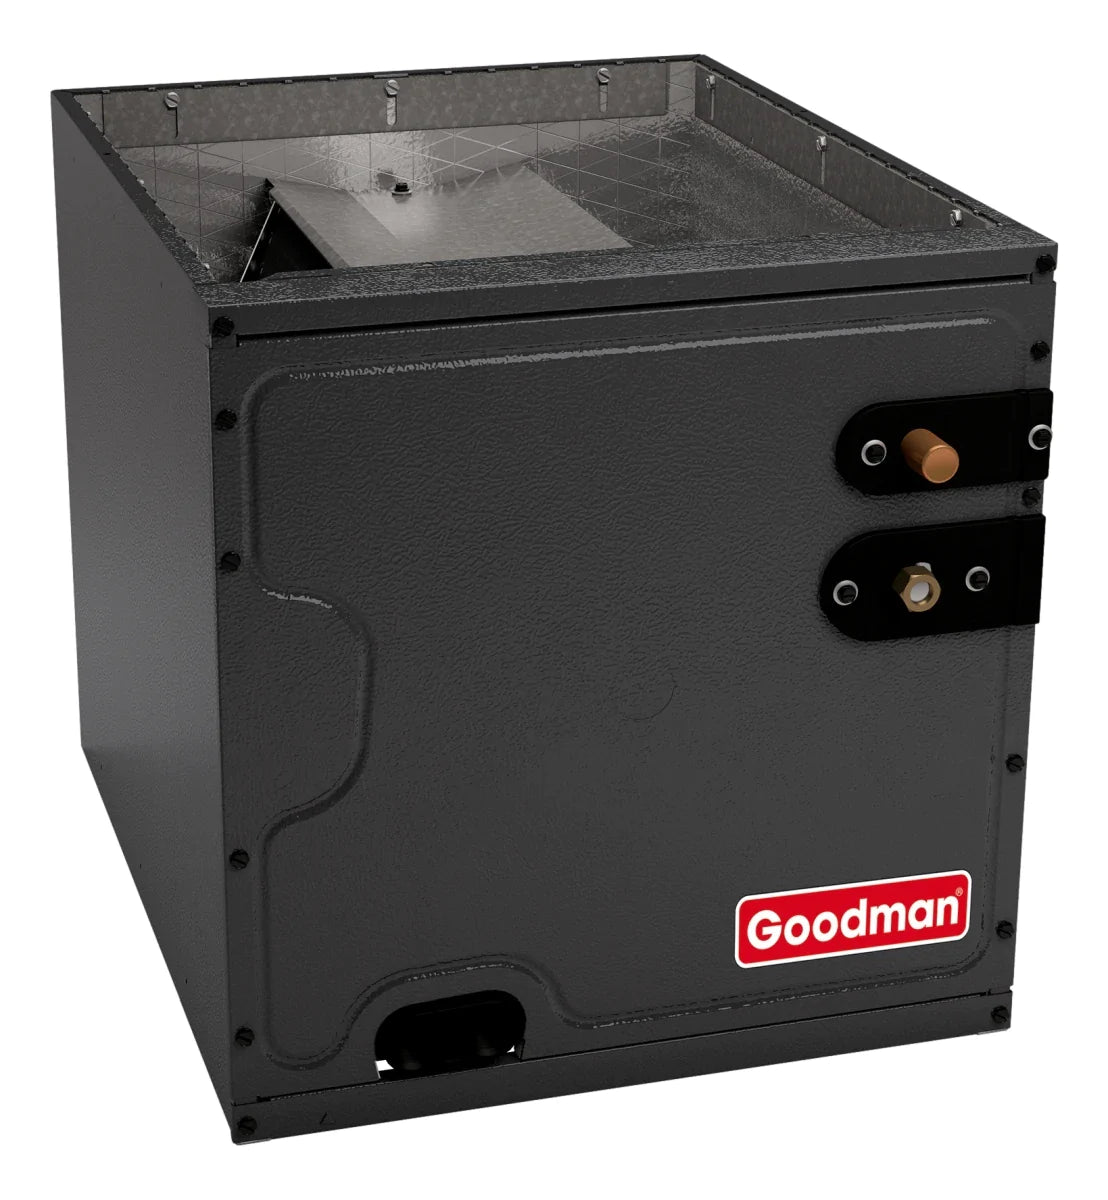 Goodman 2 TON 15.2 SEER2 Upflow AC system with 80% AFUE 60k BTU 2 stage Low NOx Furnace (GSXH502410, CAPFA3022B6, GMVC800604BX)